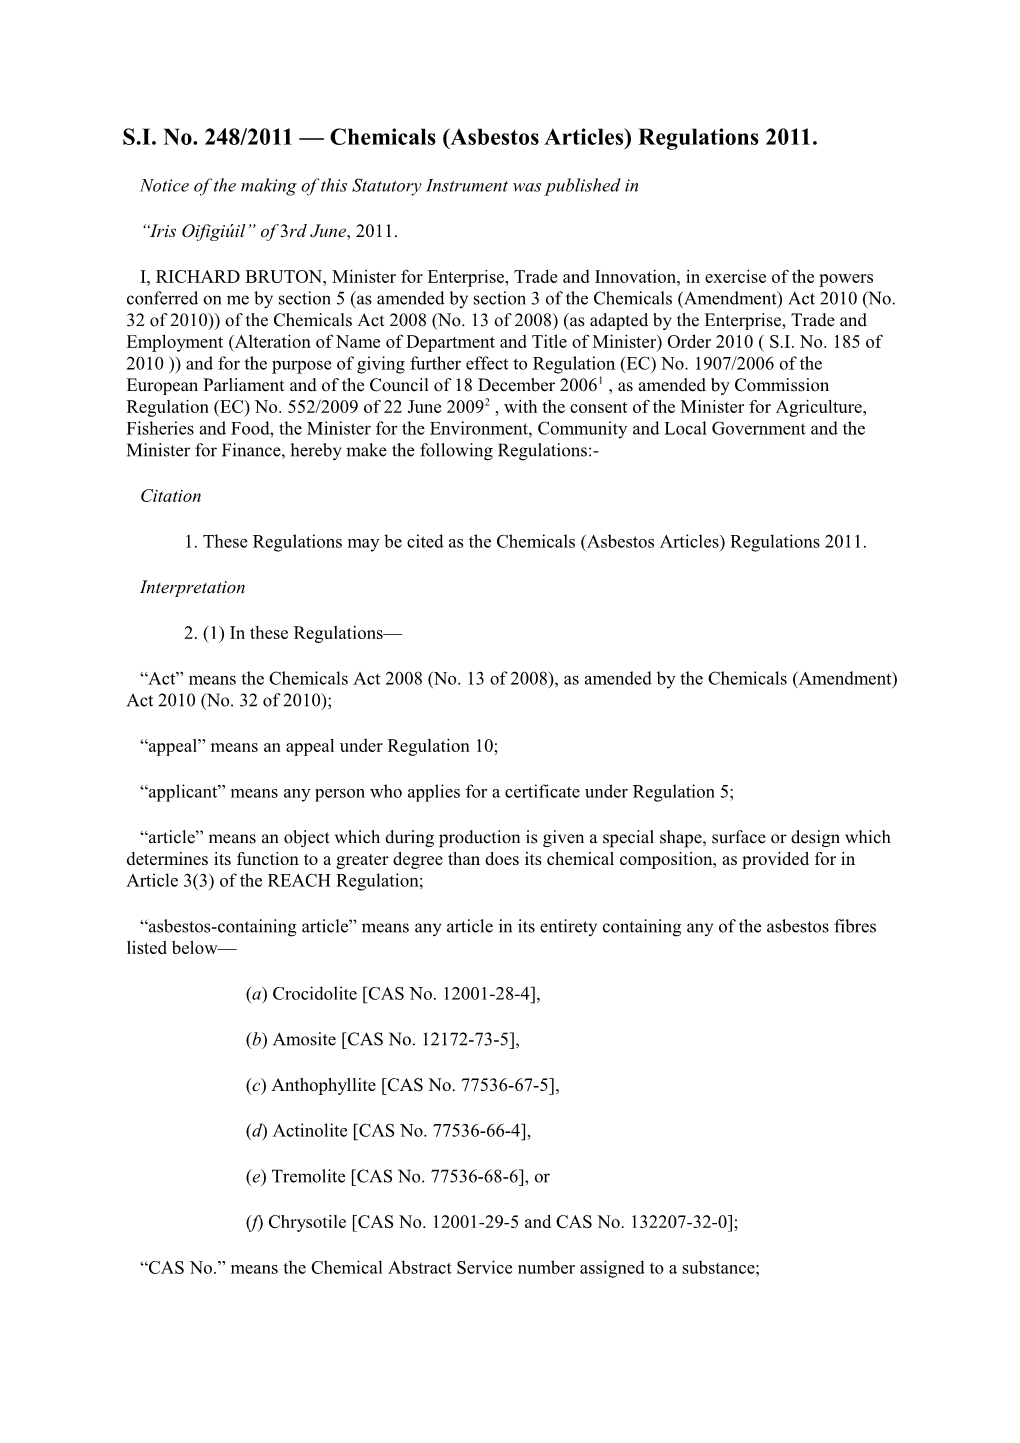 S.I. No. 248/2011 Chemicals (Asbestos Articles) Regulations 2011